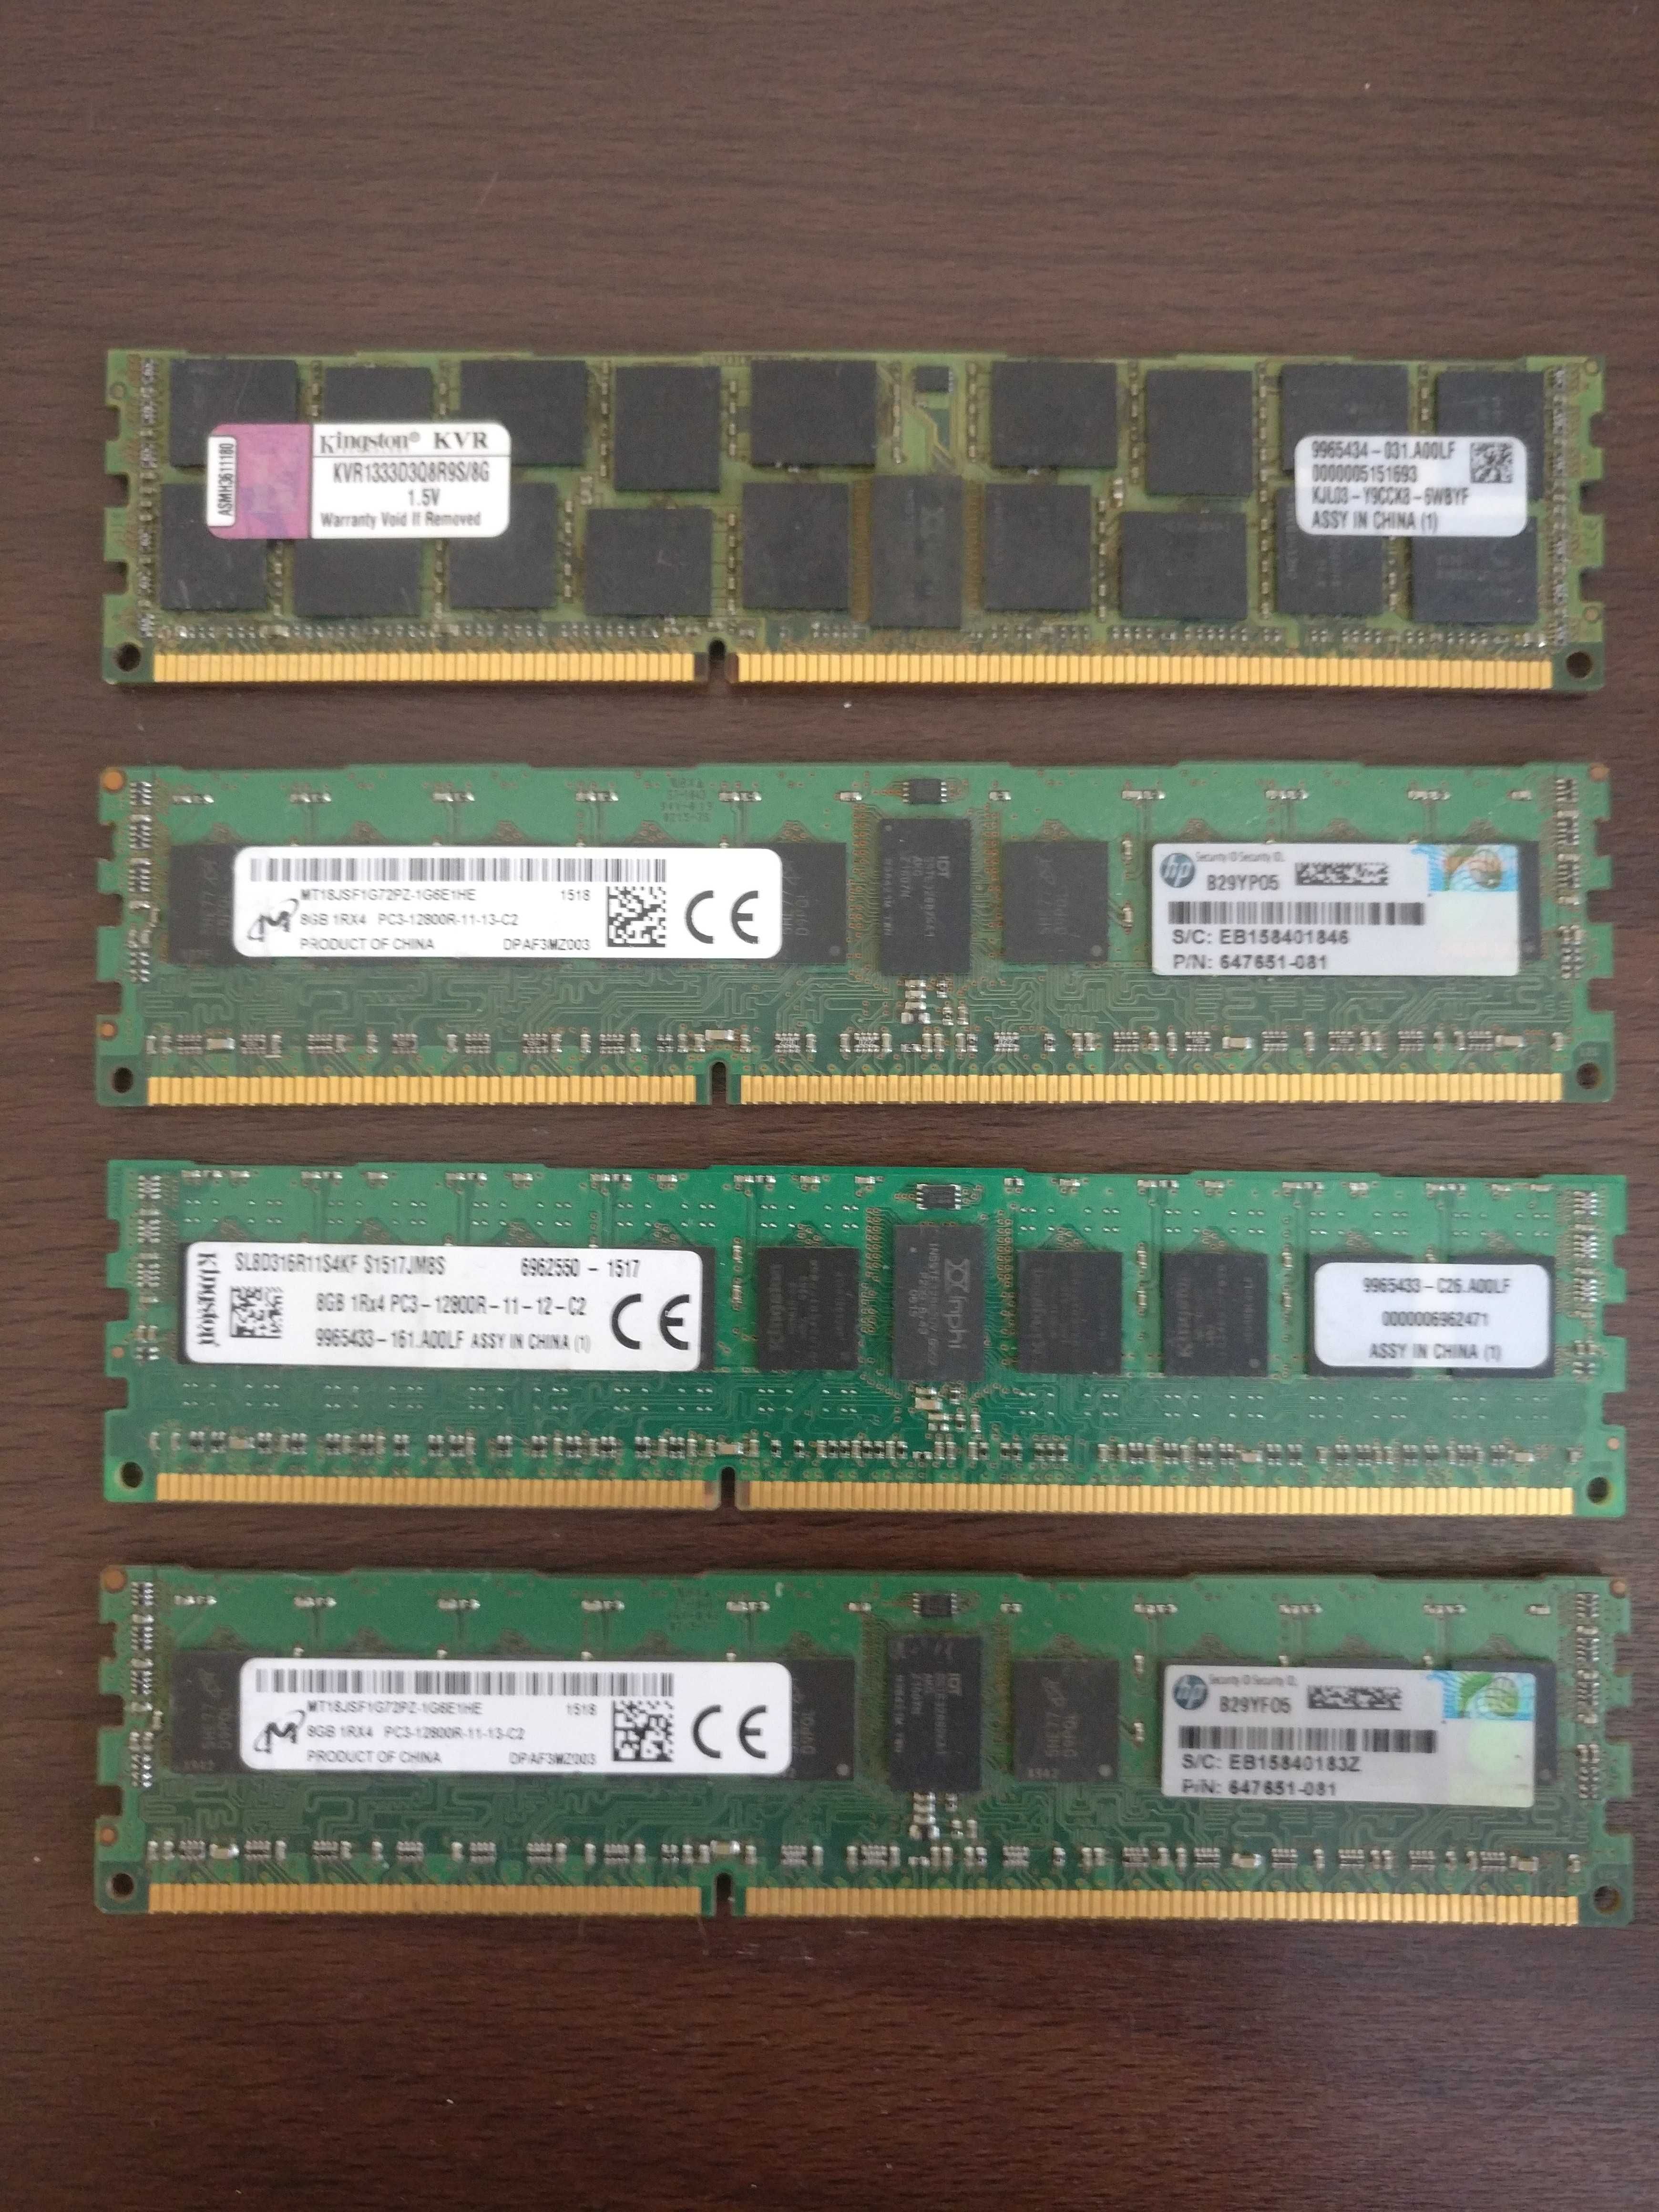 Kit Supermicro X8DT3-LN4F + 32gb RAM + 2 x Xeon L5640 + radiatoare